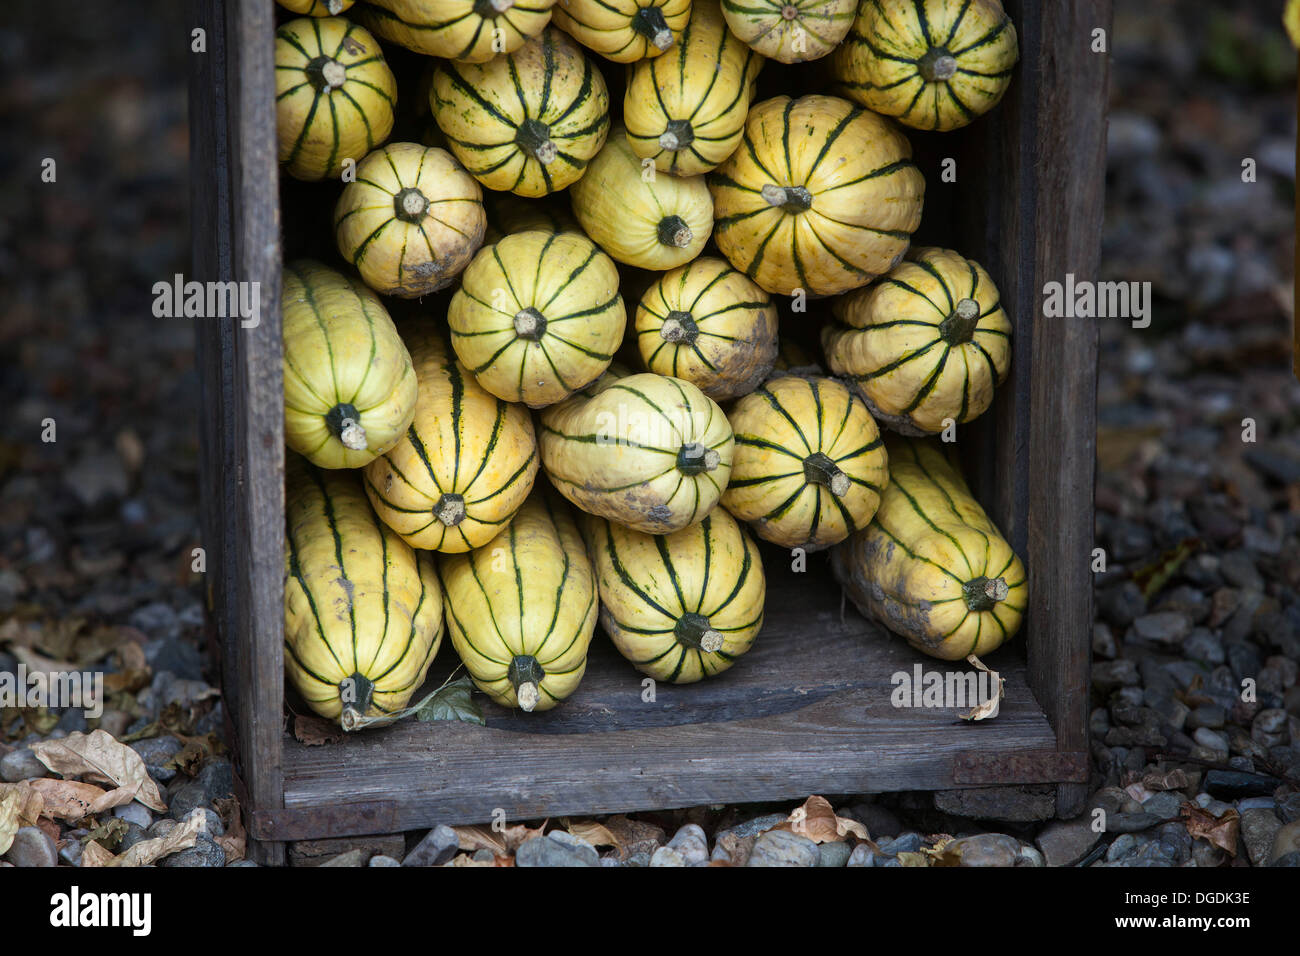 Garde d'automne dans la caisse de citrouilles de jardin potager, squash Cucurbita pepo, caisse en bois exposition Banque D'Images